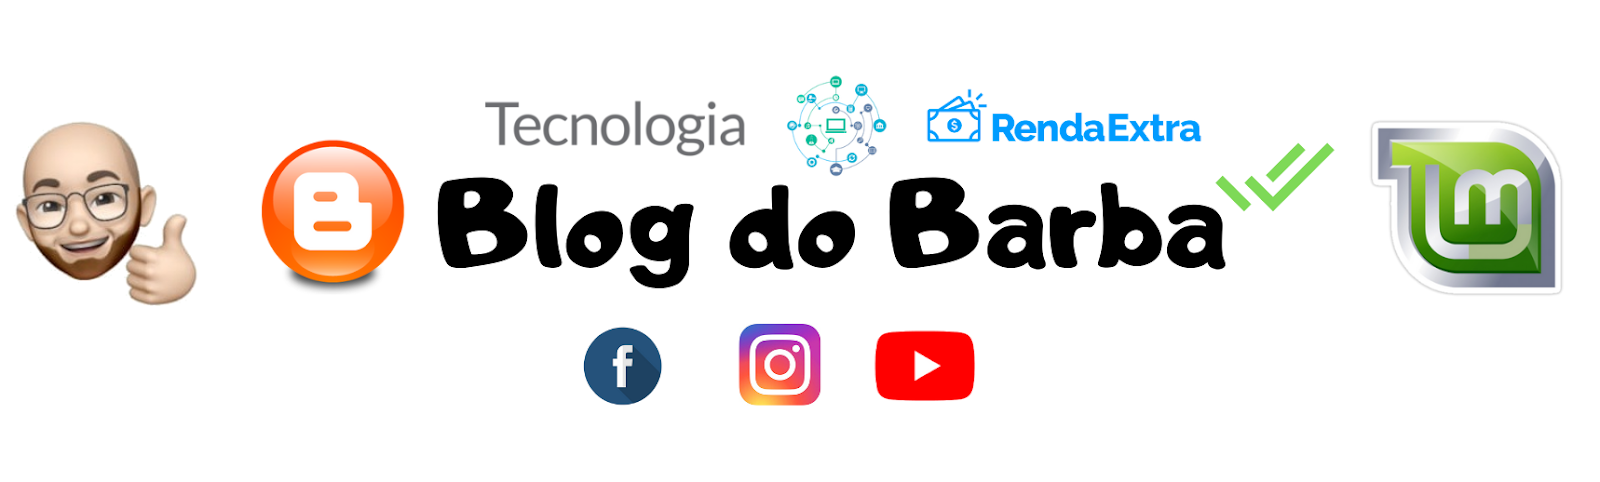 Blog do Barba / Tecnologia / Renda Extra / Bitcoin Grátis